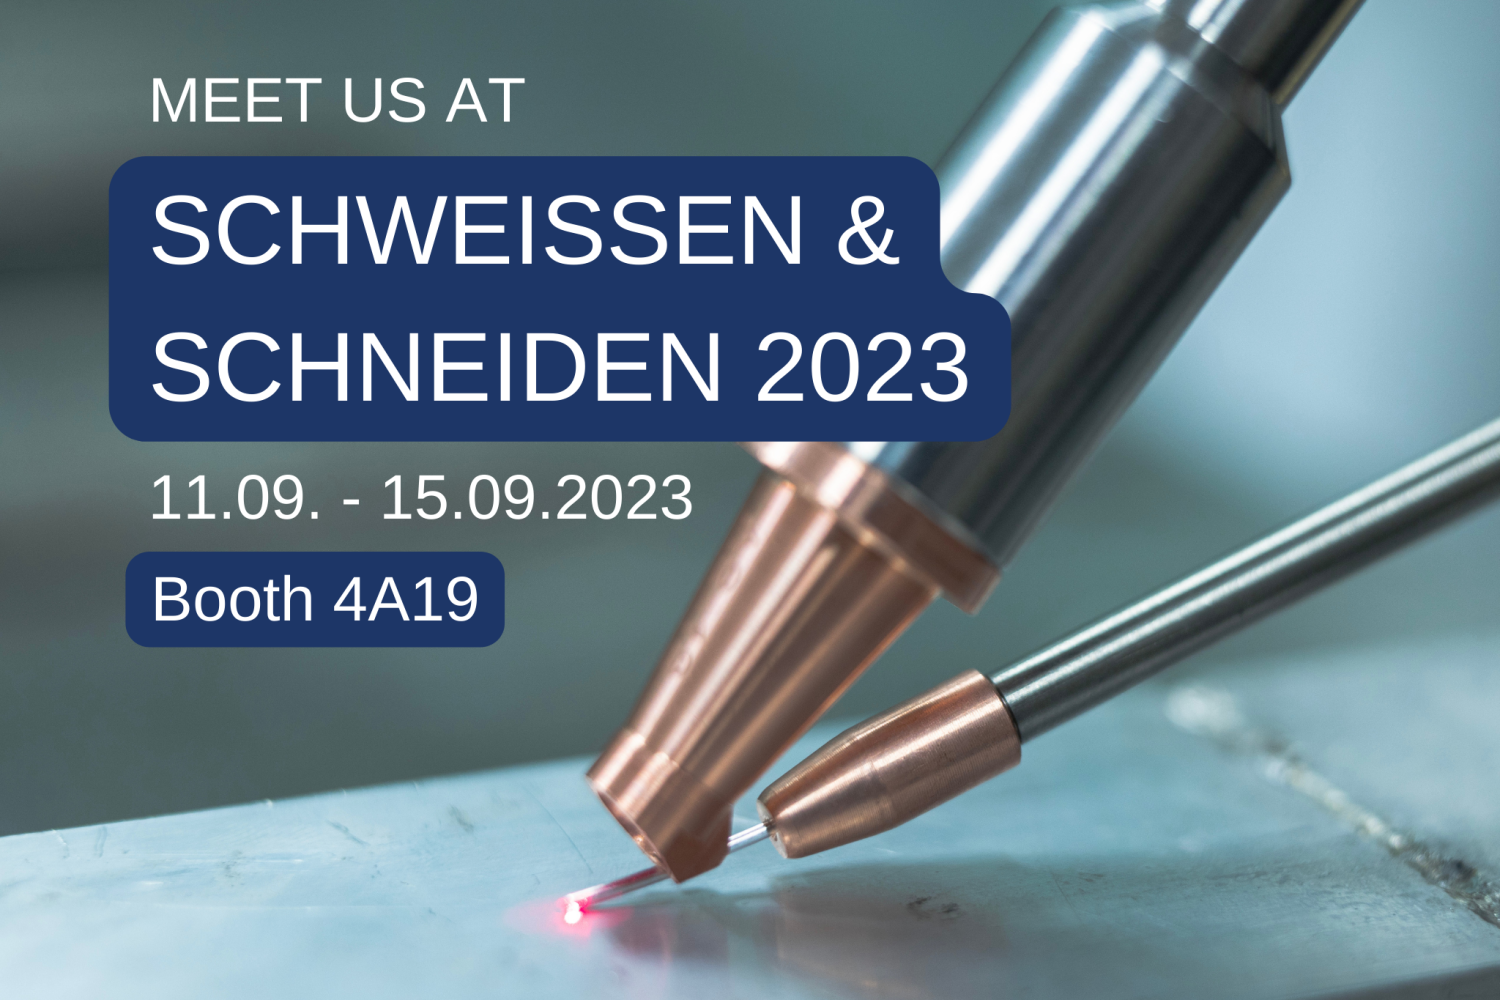 Meet Us at Schweissen & Schneiden 2023 in Germany